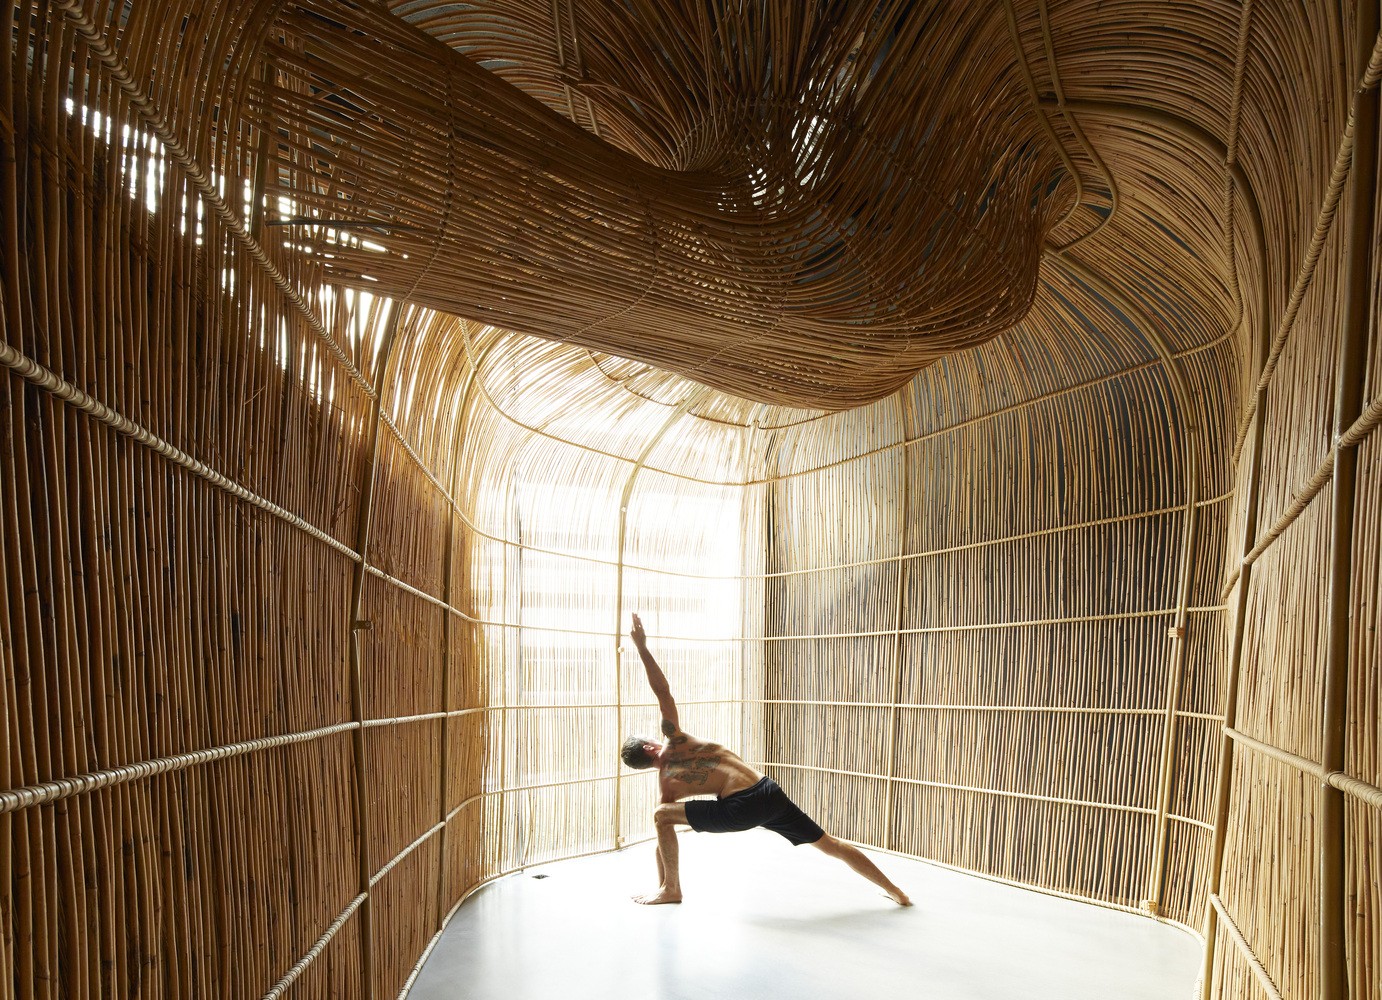 Sede de empresa de yoga é construída com materiais naturais e impressão 3D (Foto: Edmund Sumner)